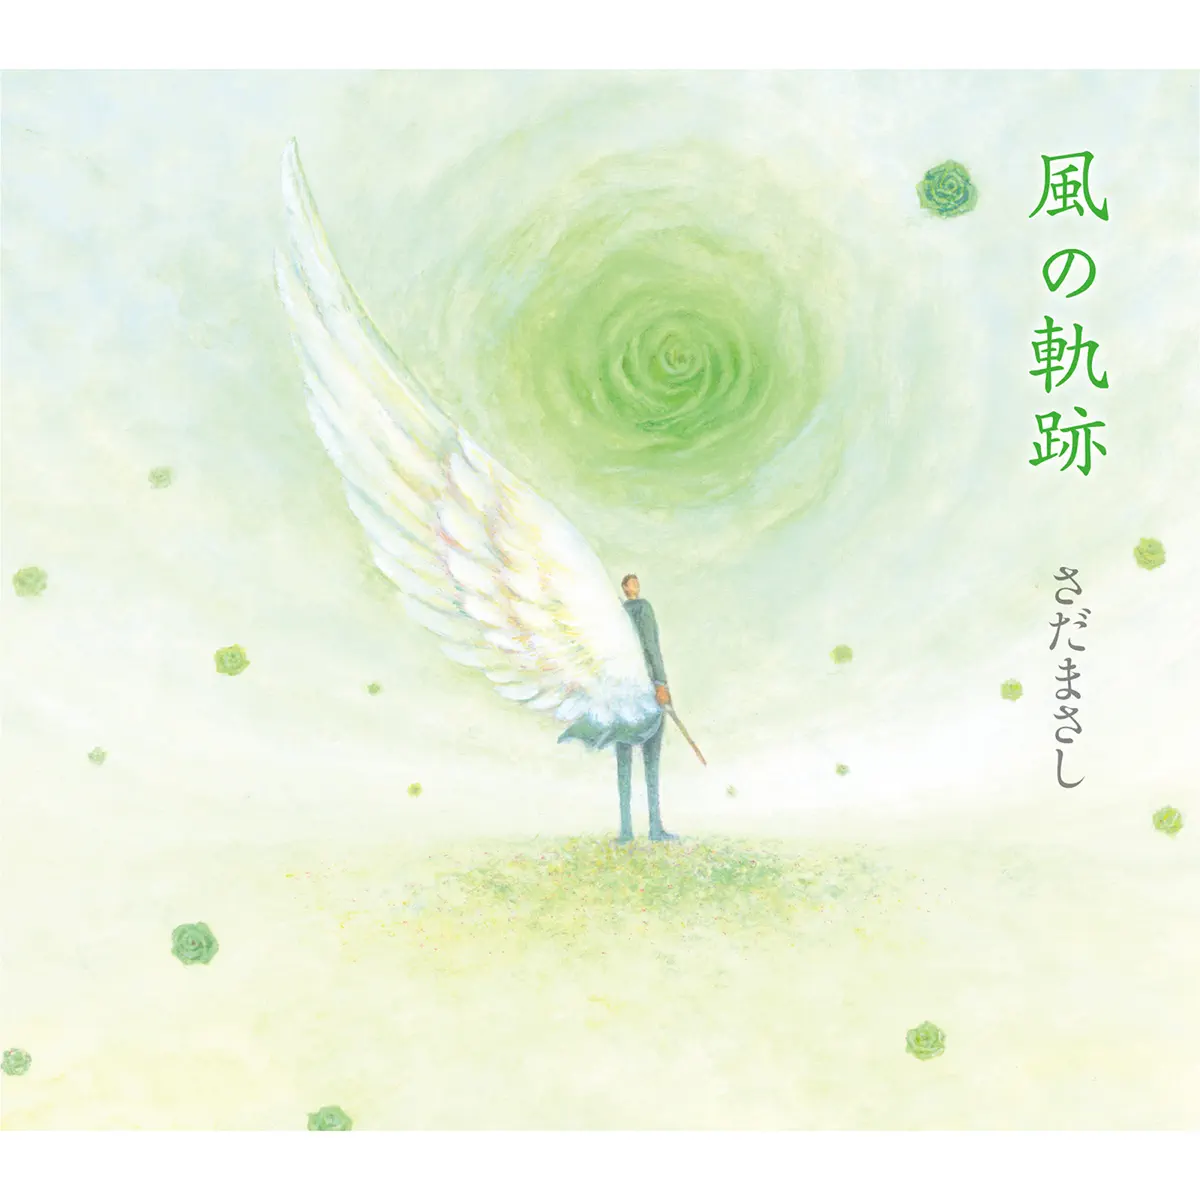 さだまさし - 风の轨迹 (2015) [iTunes Plus AAC M4A]-新房子